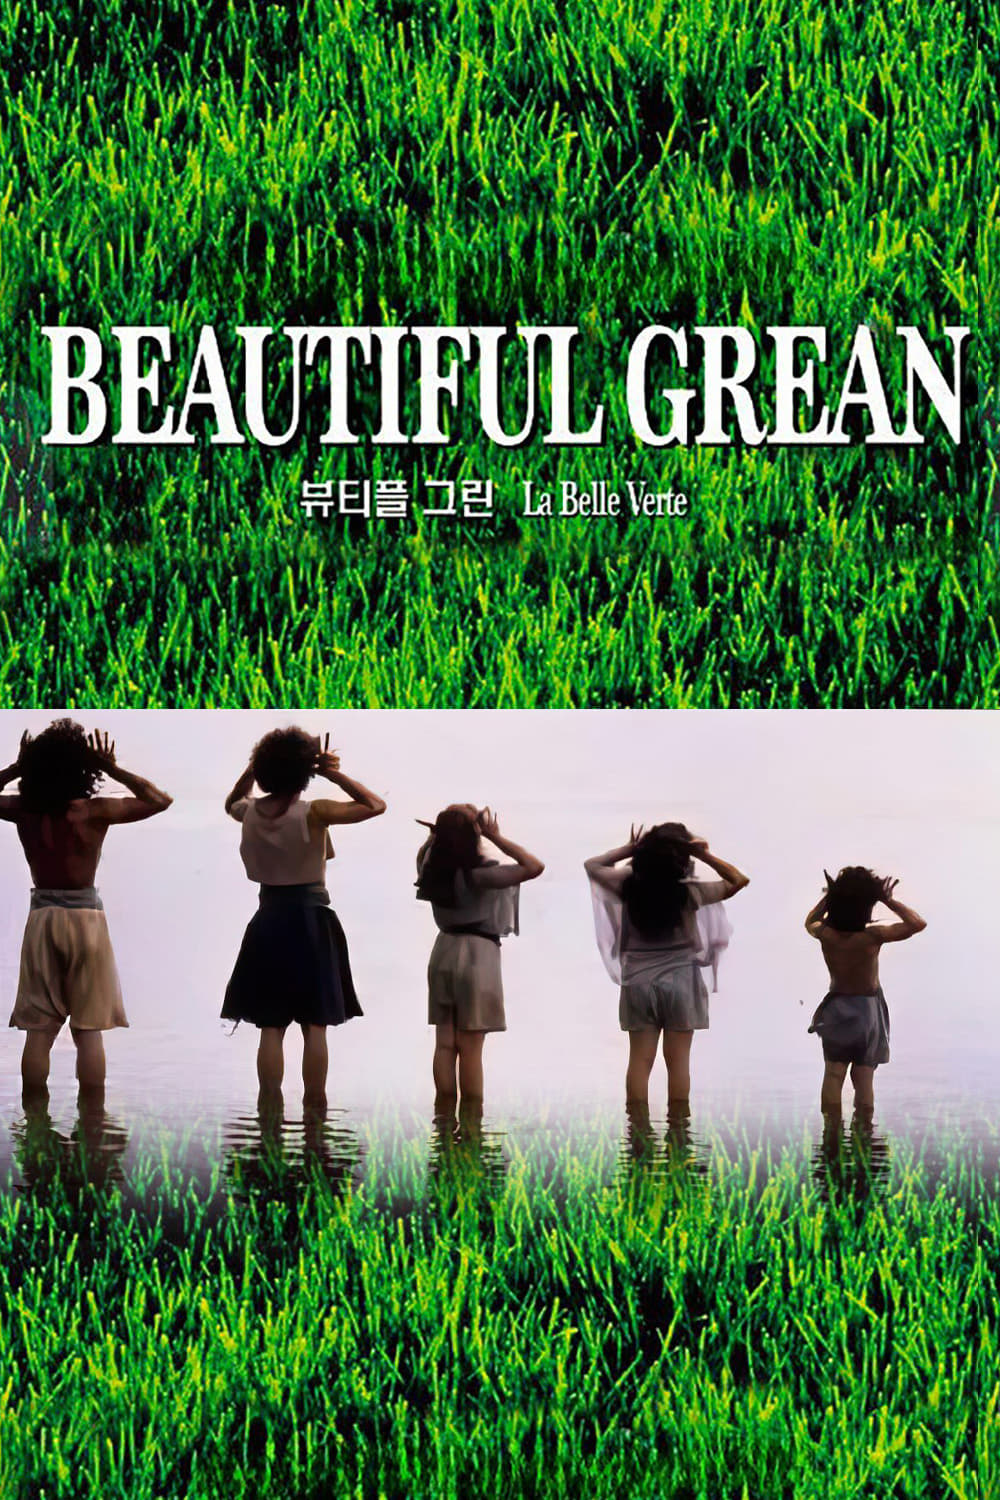 La Belle Verte (1996)